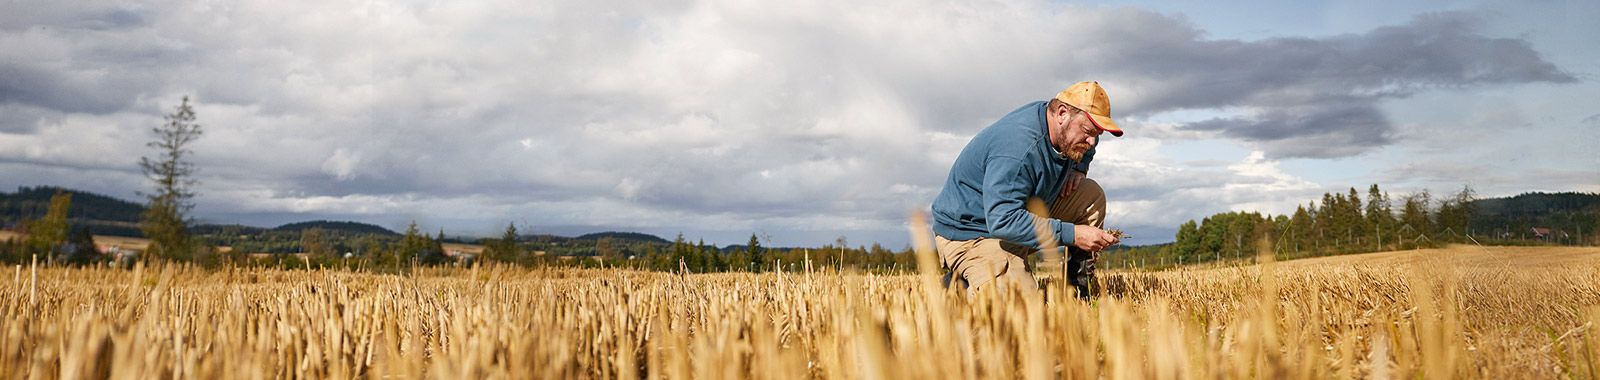 Un agriculteur vérifie la qualité du blé dans son champ